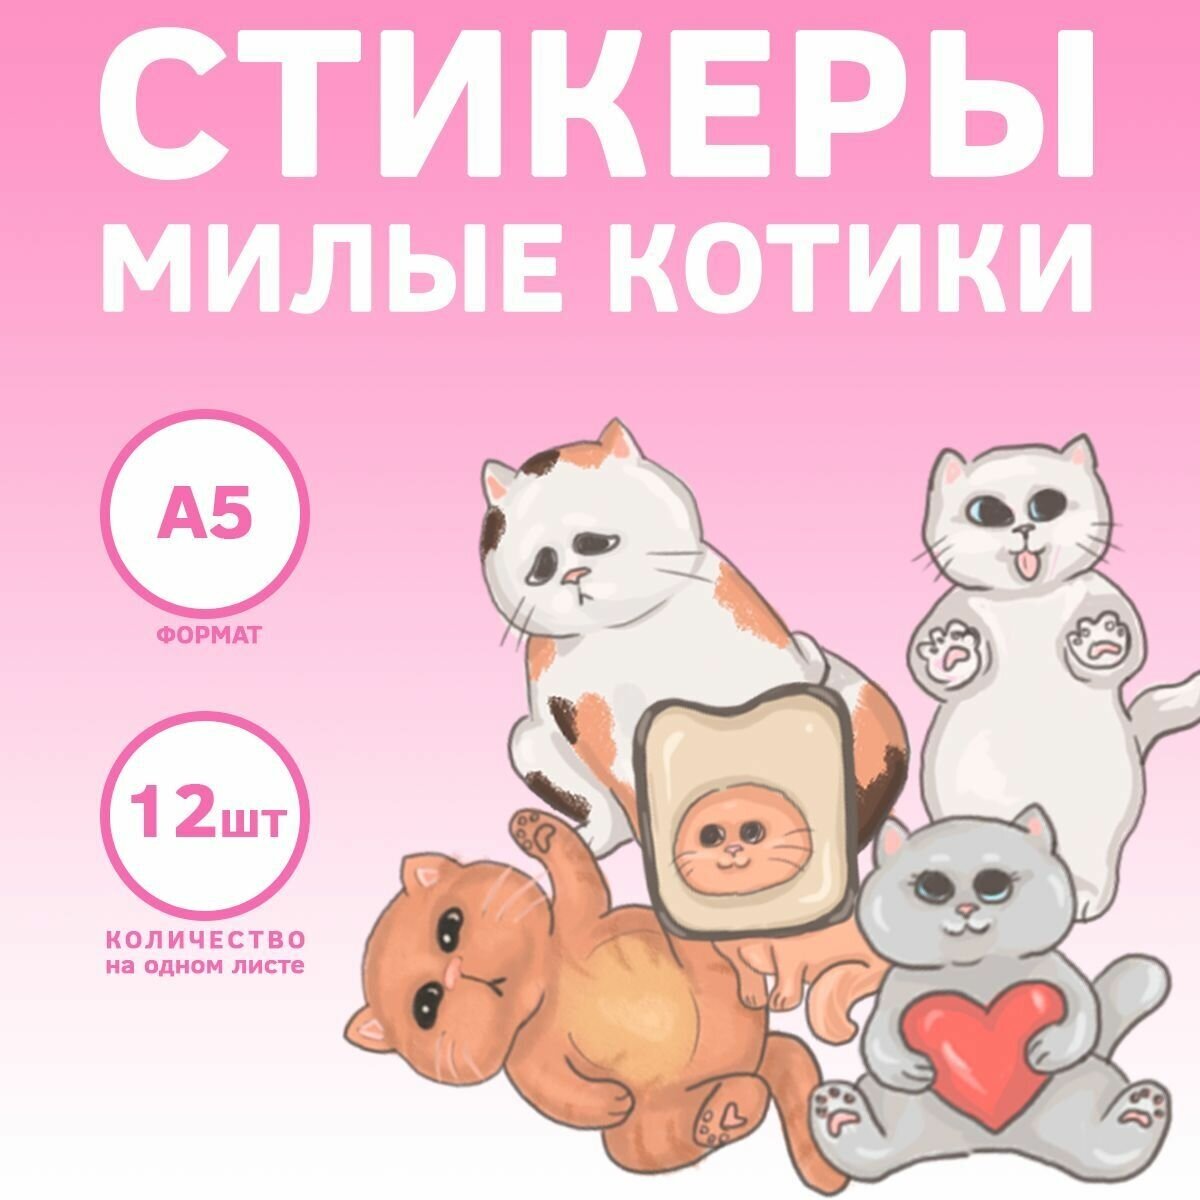 Набор наклеек-стикеров "Милые котики" для декора, смартфона, телефона, ноутбука